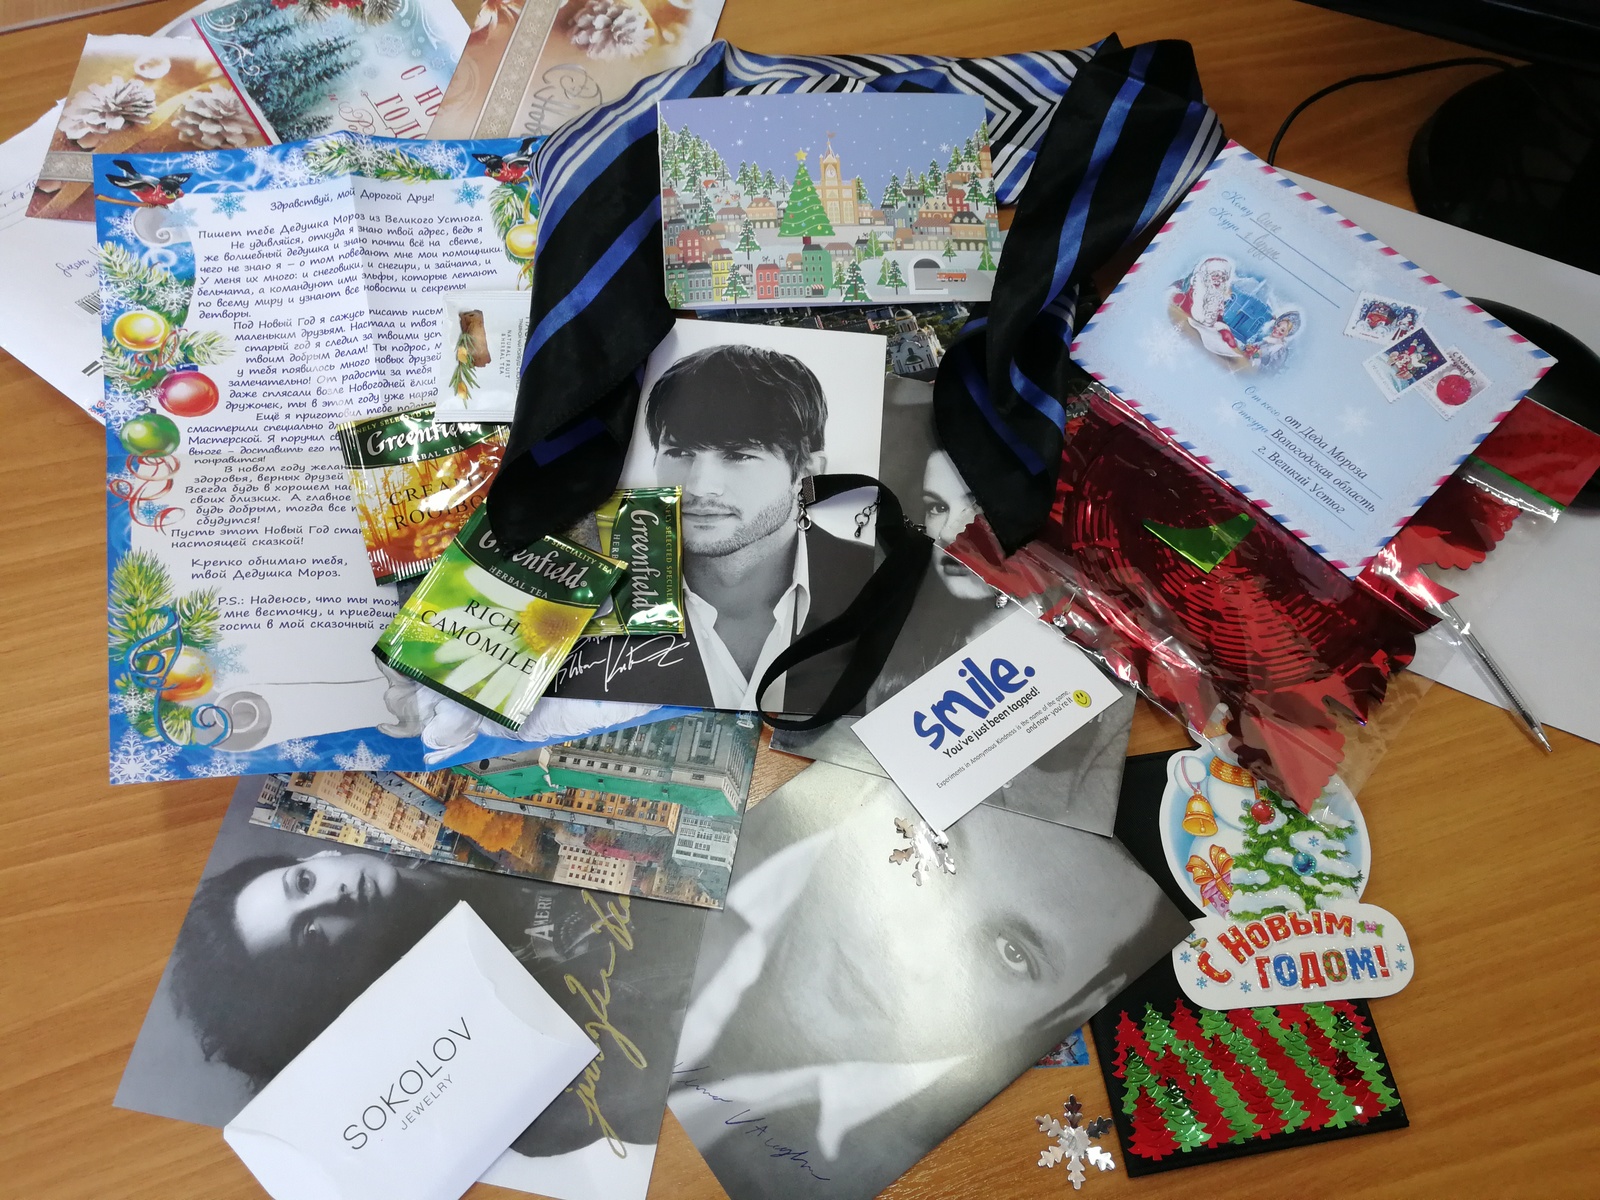 ADM Yekaterinburg - Suzun - Gift exchange, Gift exchange report, Secret Santa